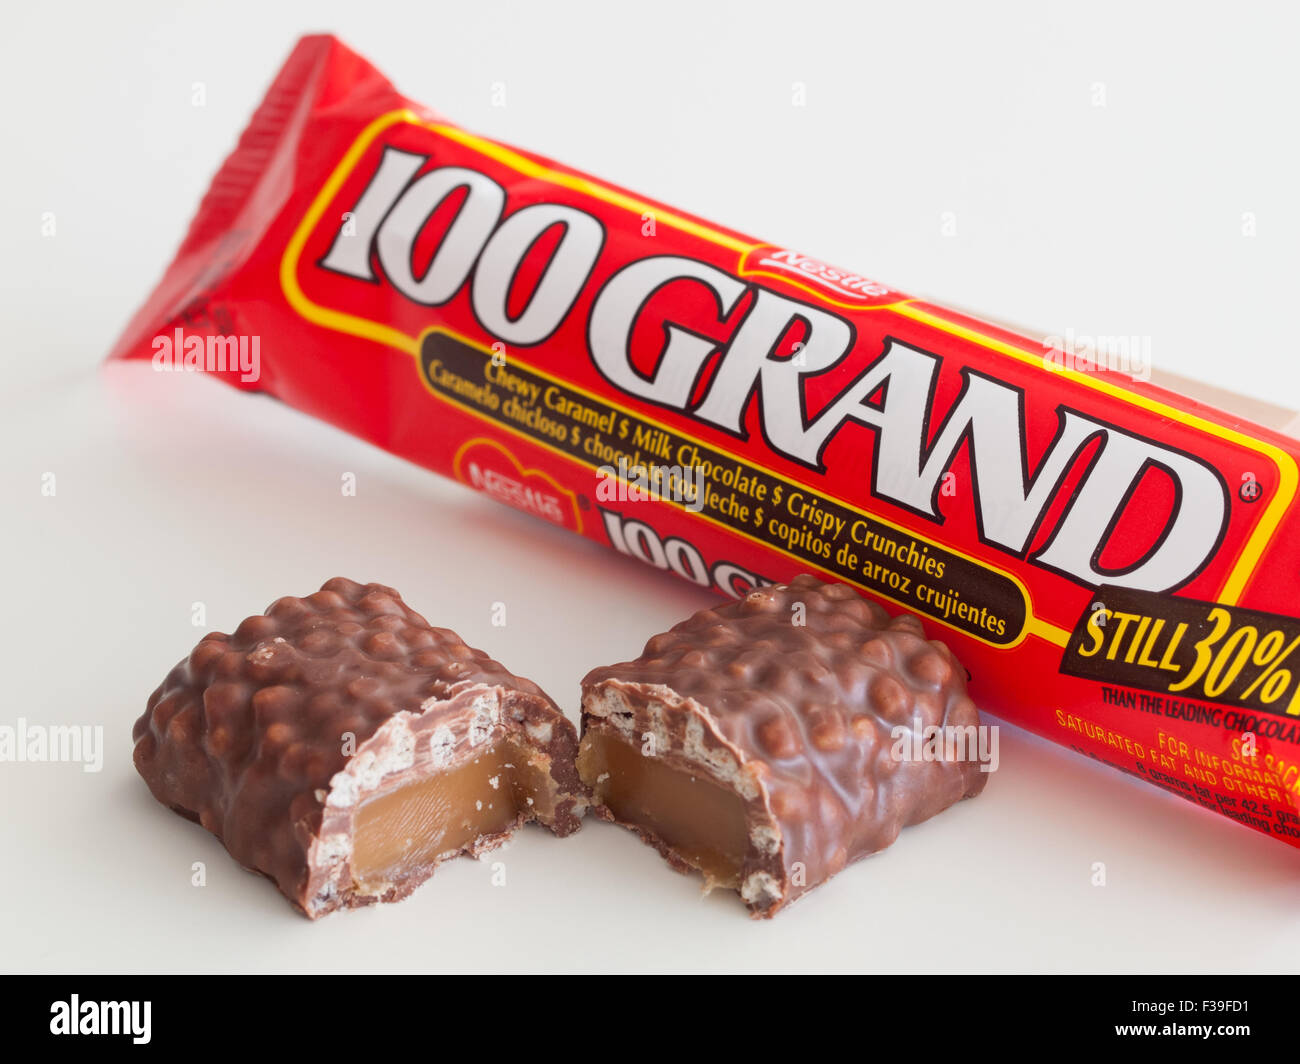 Eine 100 Grand Bar, eine Schokolade Schokoriegel von Nestlé gemacht. Stockfoto